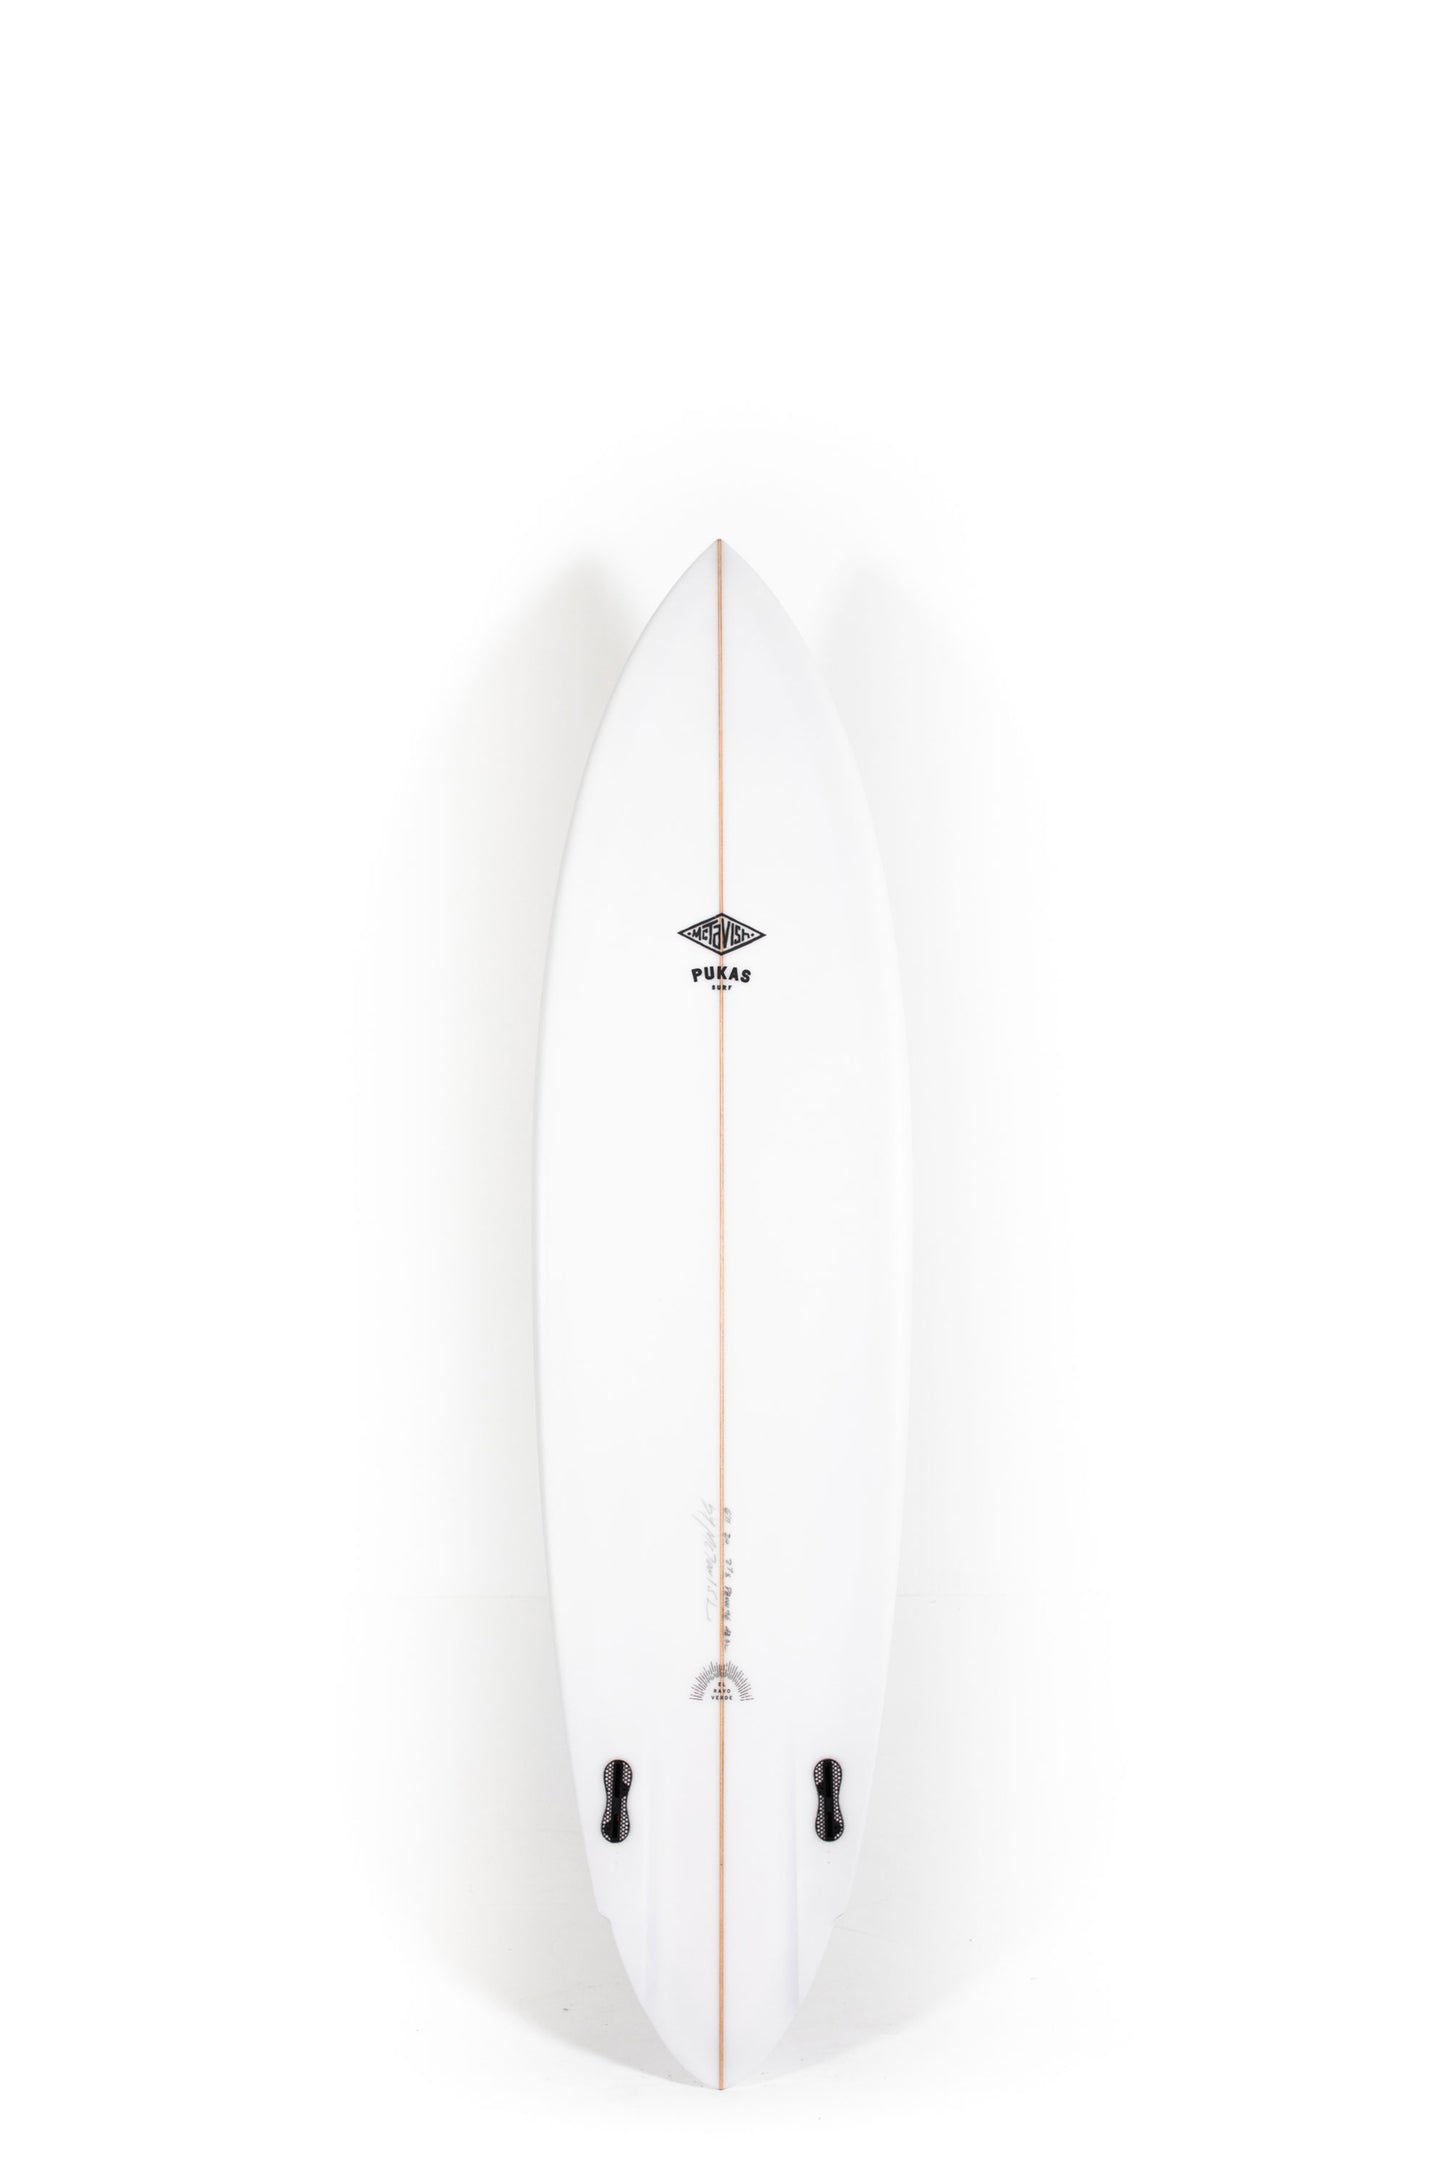 Pukas Surf Shop - Pukas Surfboards - RAYO VERDE by Bob McTavish - 6'11" x 20 x 2,88 x 43,3L - PB00096